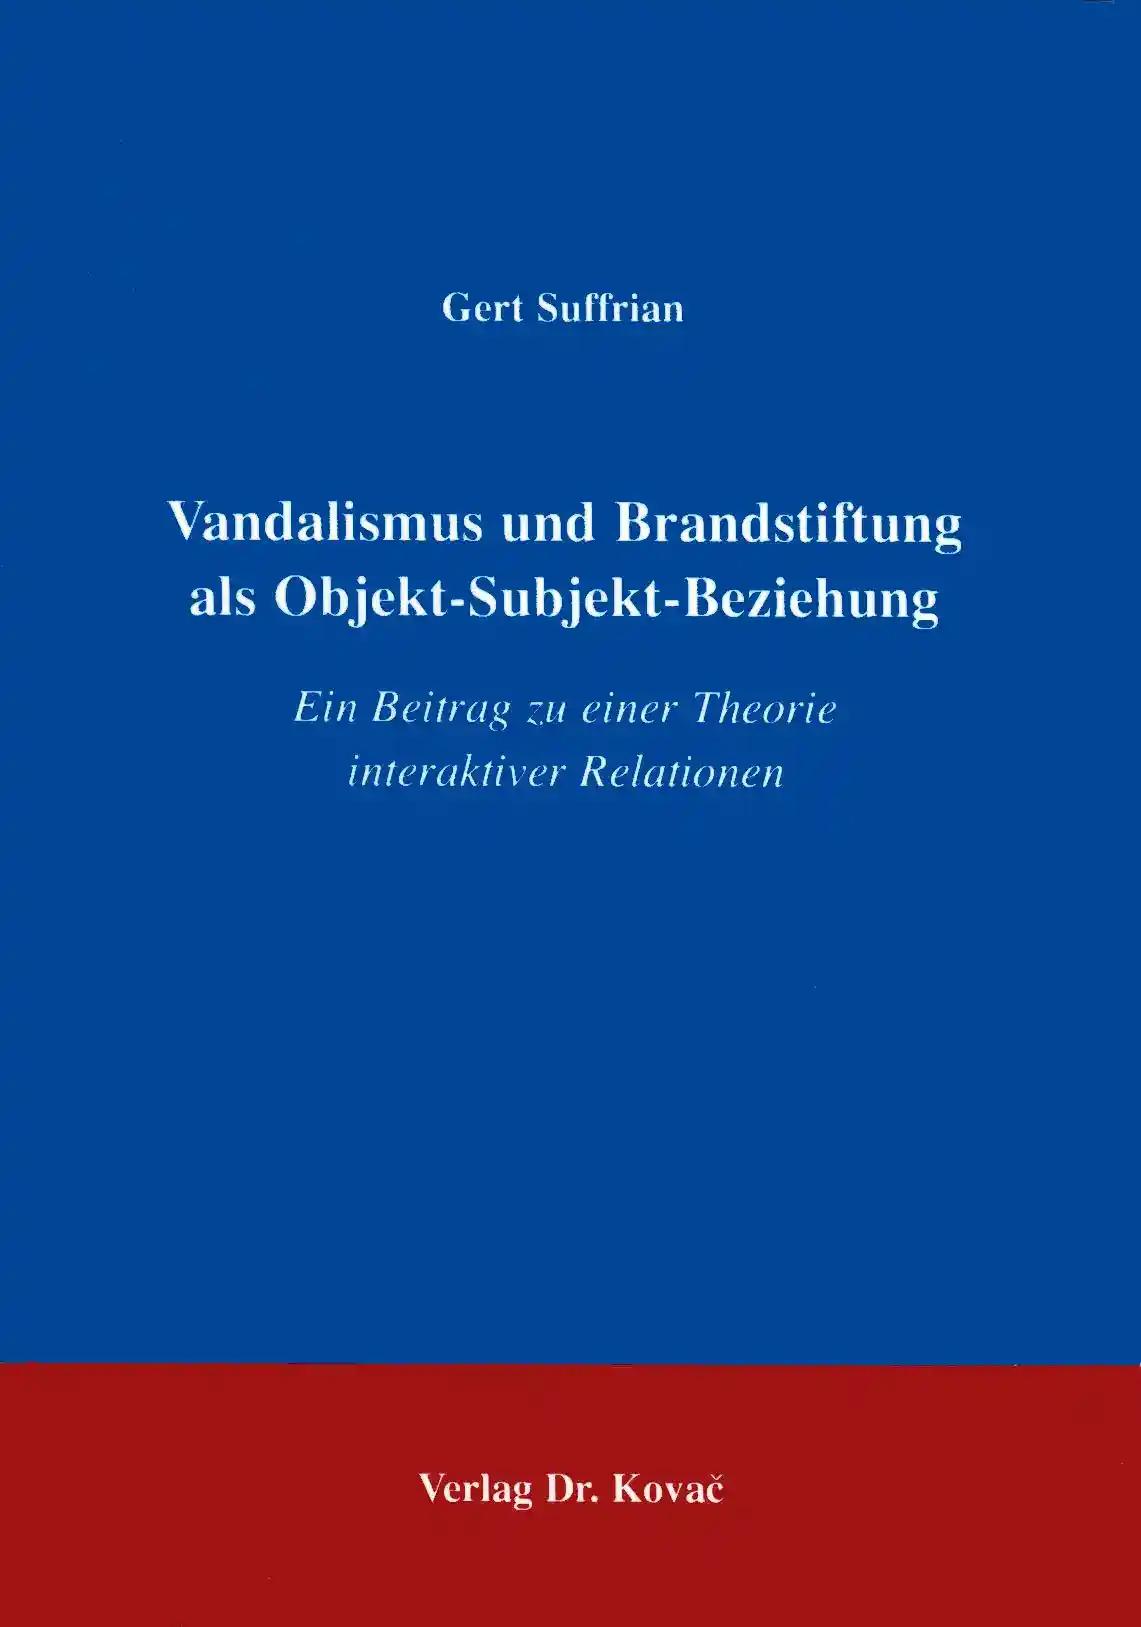 Vandalismus und Brandstiftung als Objekt-Subjekt-Beziehung, Ein Beitrag zu einer Theorie interaktiver Relationen - Gert Suffrian